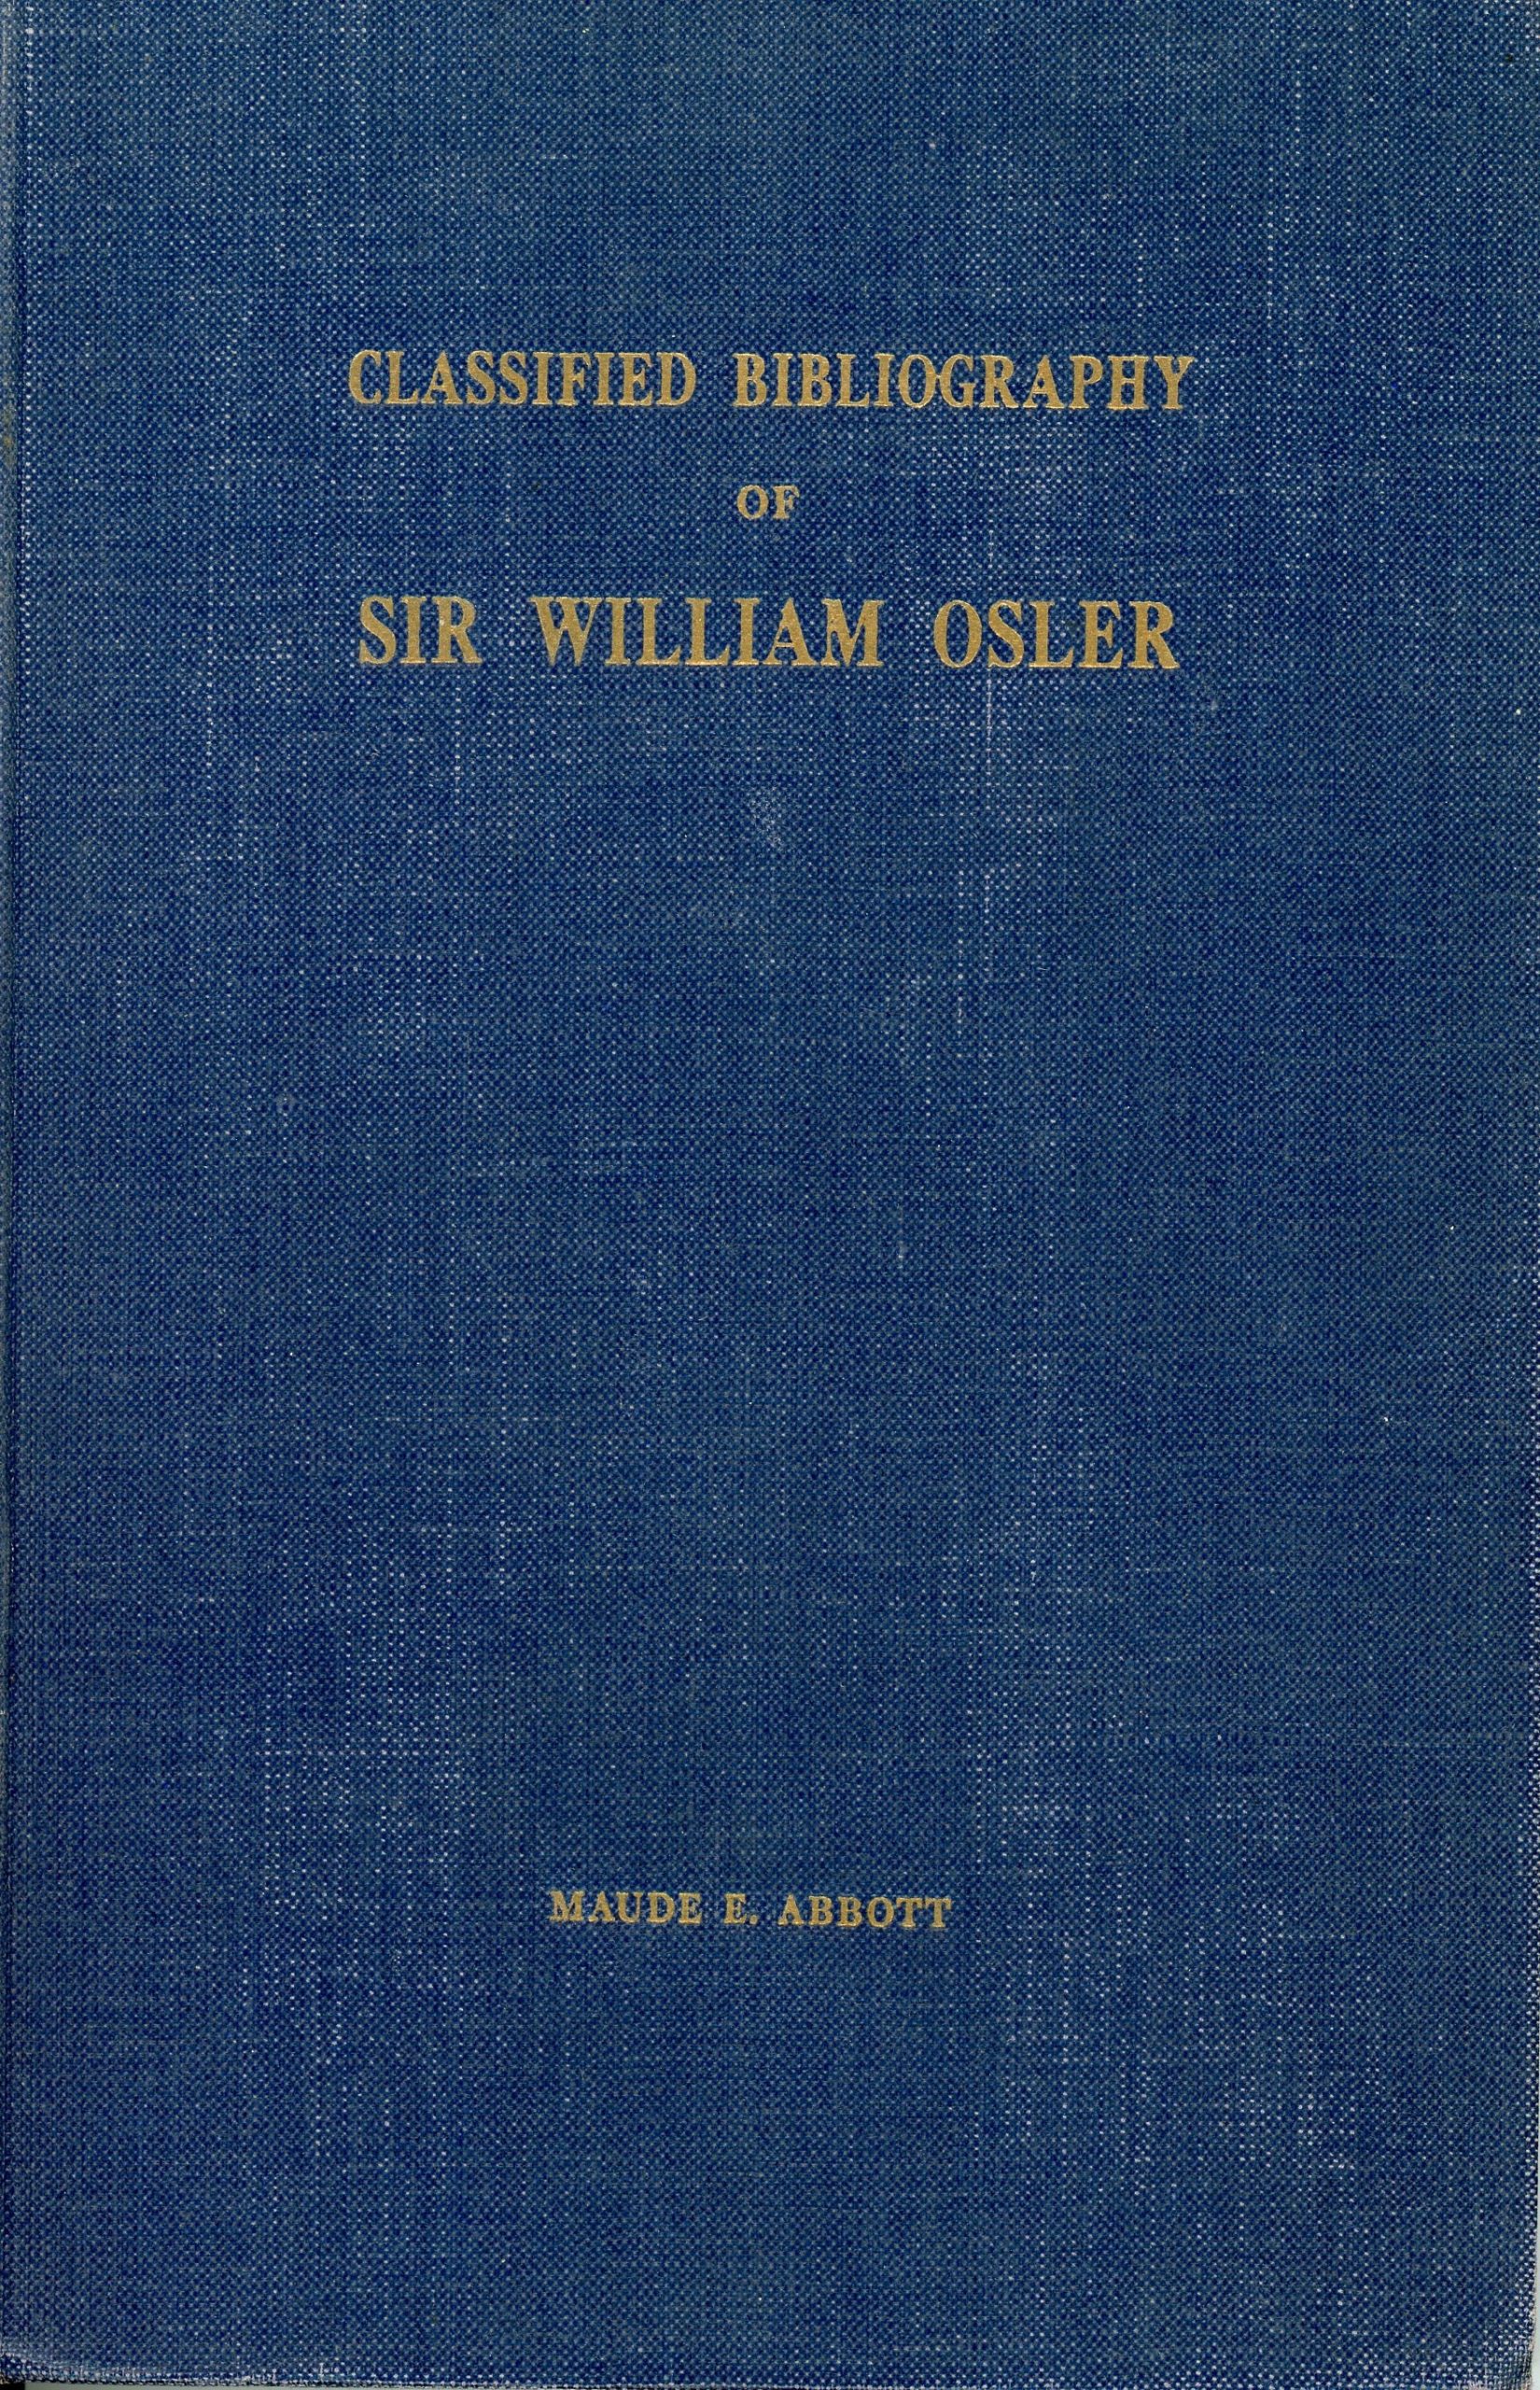 Page couverture d’un livre. Le livre est bleu avec le titre suivant inscrit en lettres dorées : « Classified Biliography of Sir William Osler Maude E. Abbot »